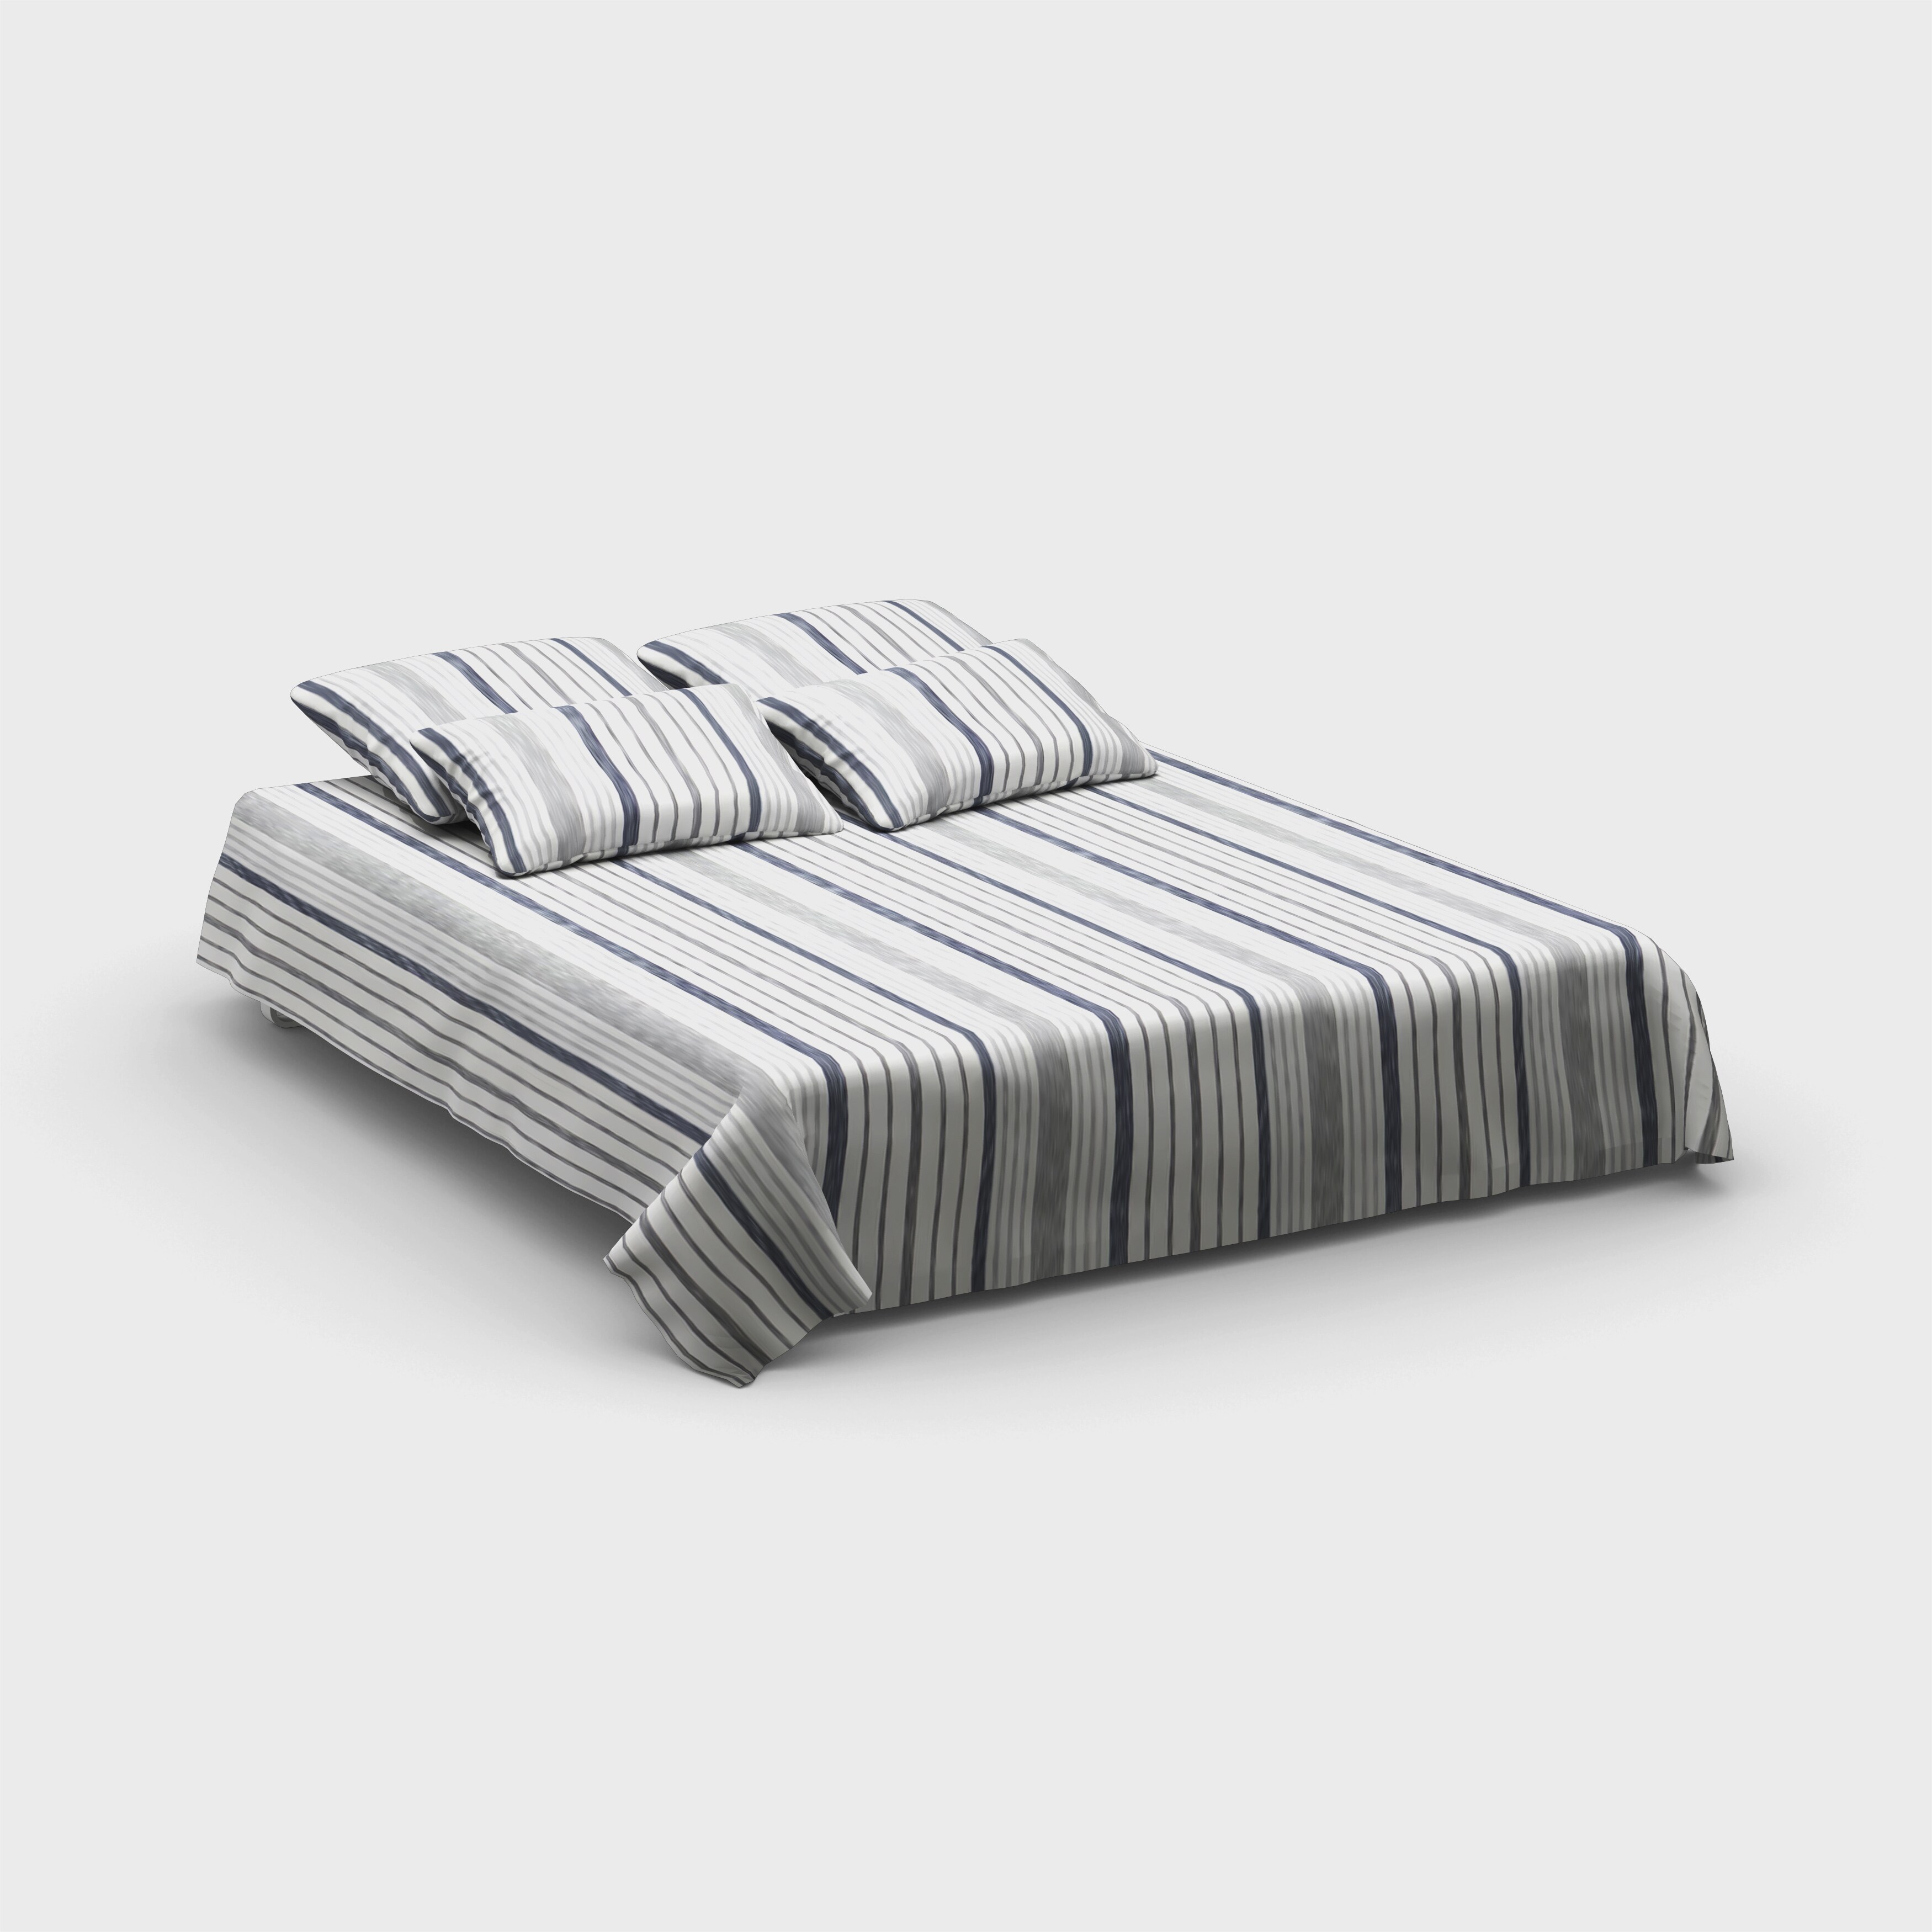 Porch & Den Claude 3-piece Cotton Comforter Set